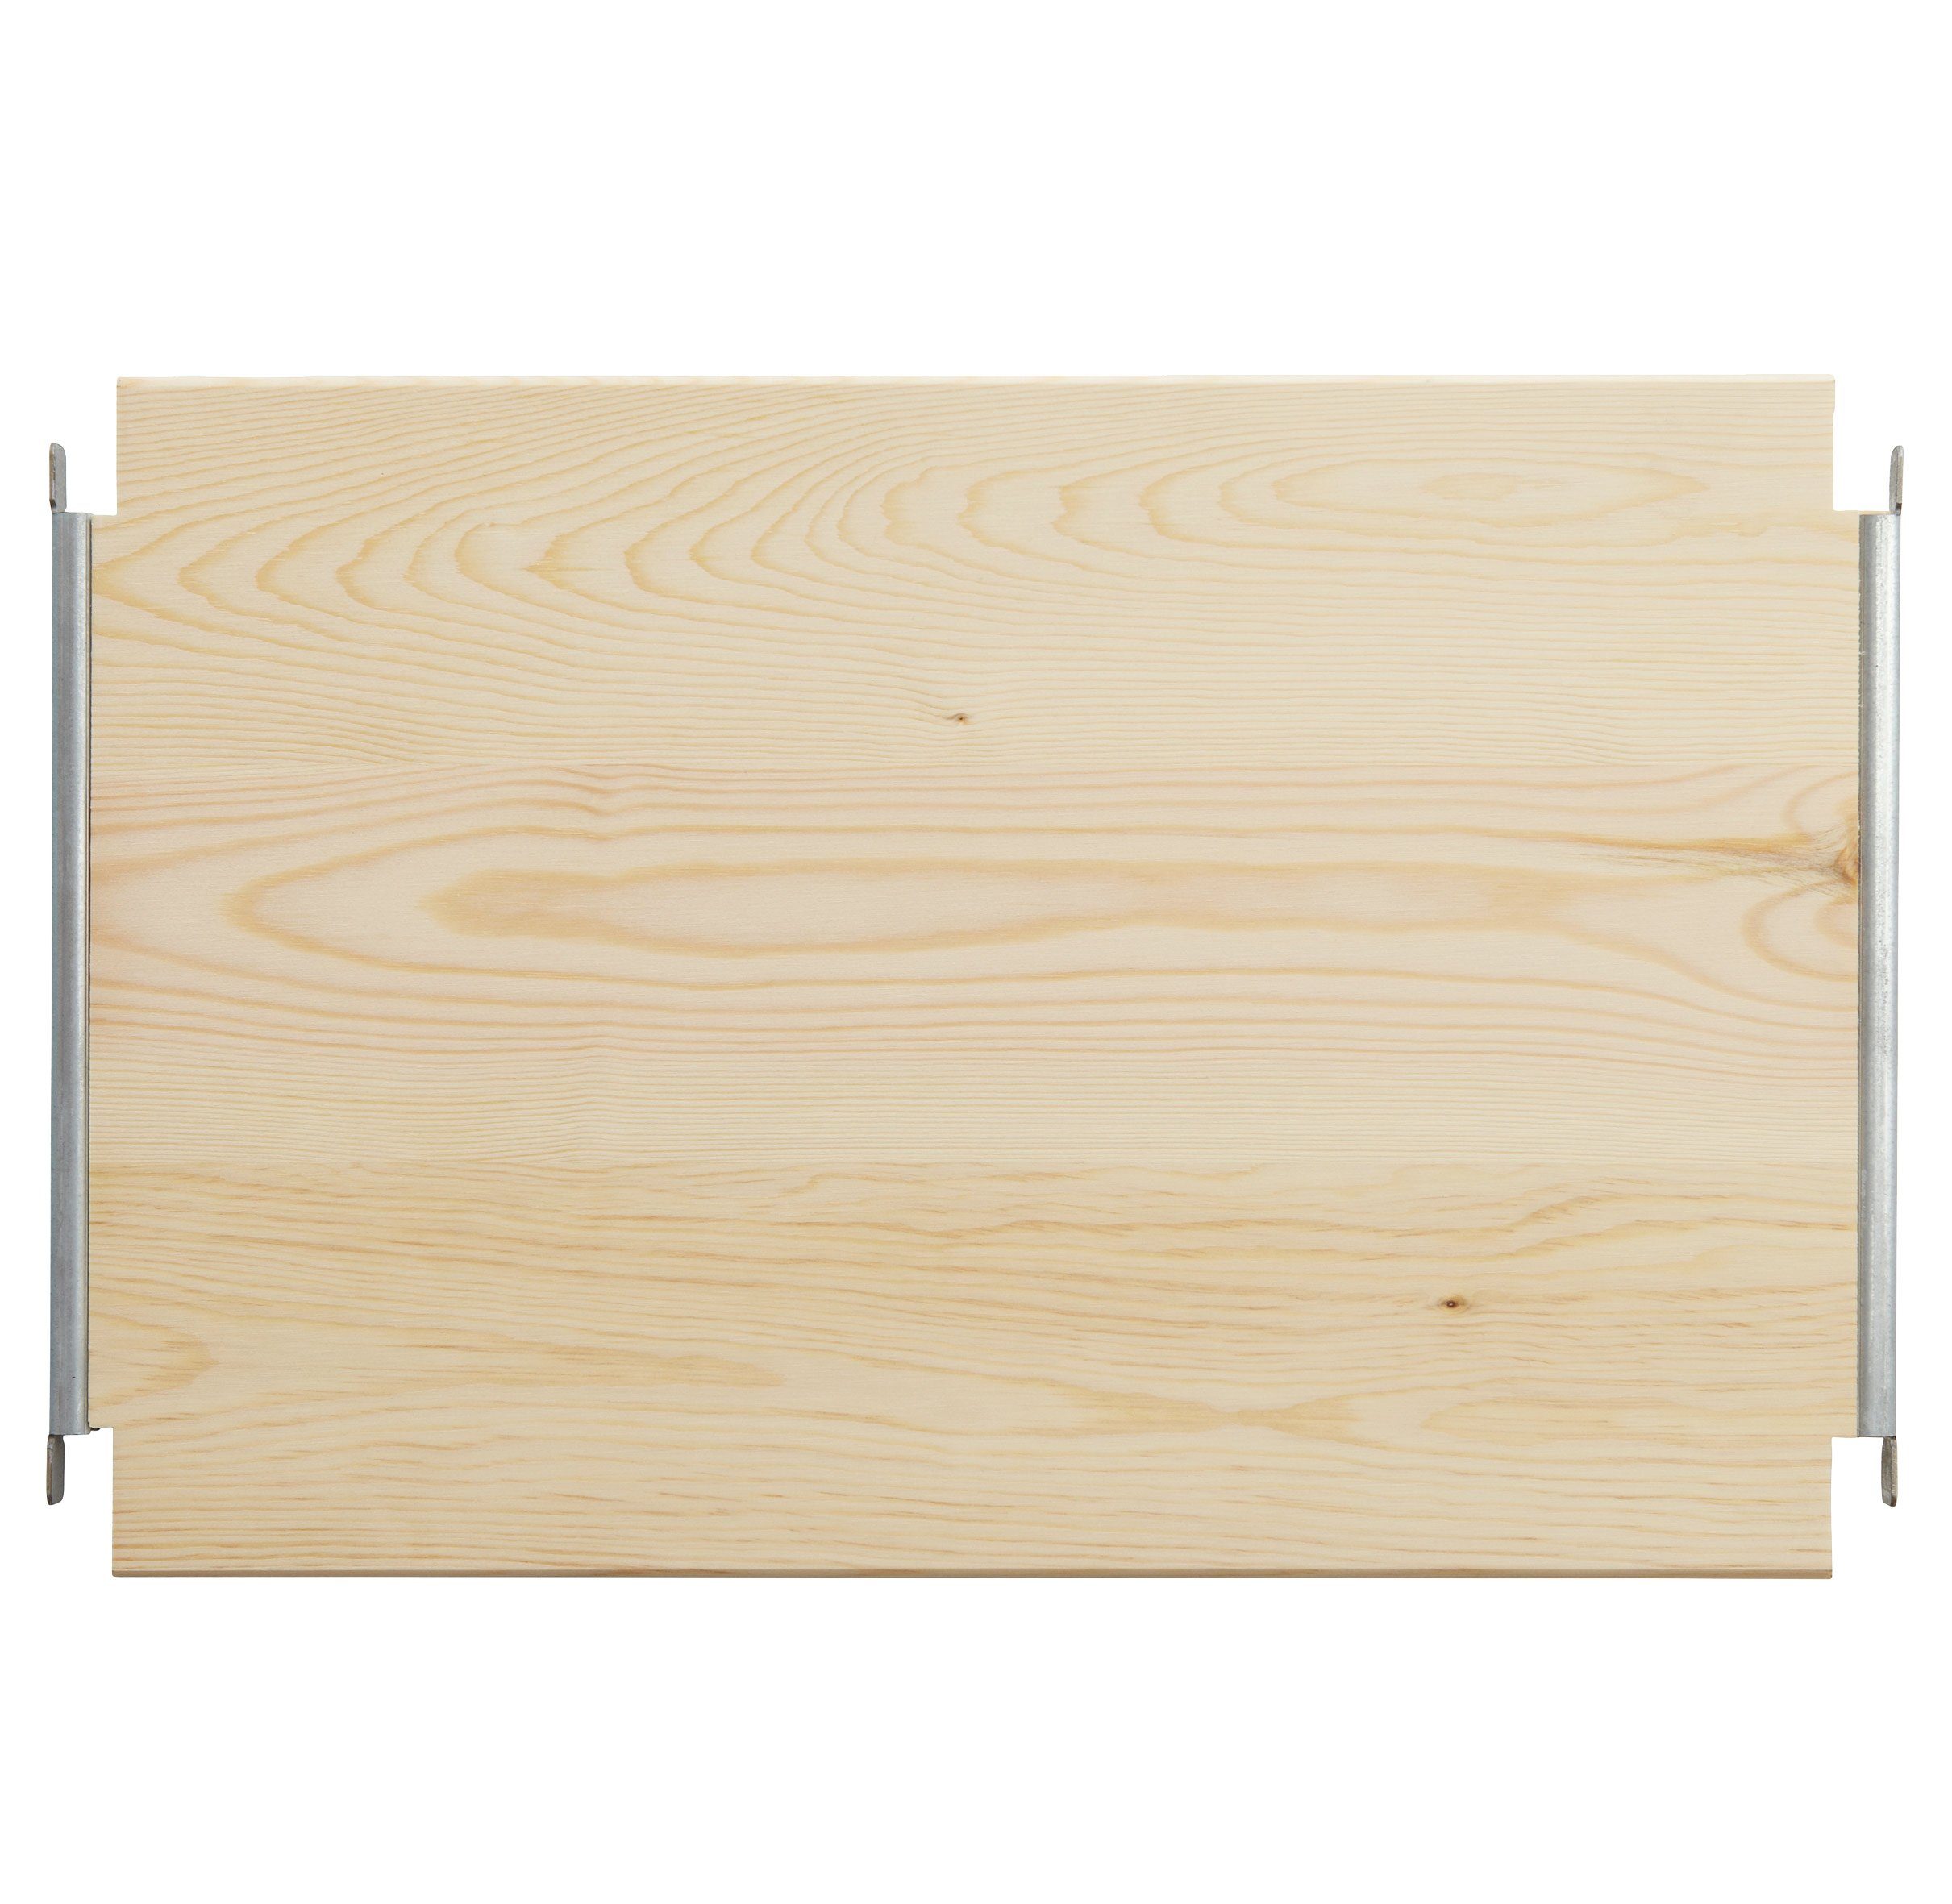 Einlegeboden Regalboden Kieferholz Regalsysteme x B 40 T cm, 39 für massiv, LASSE